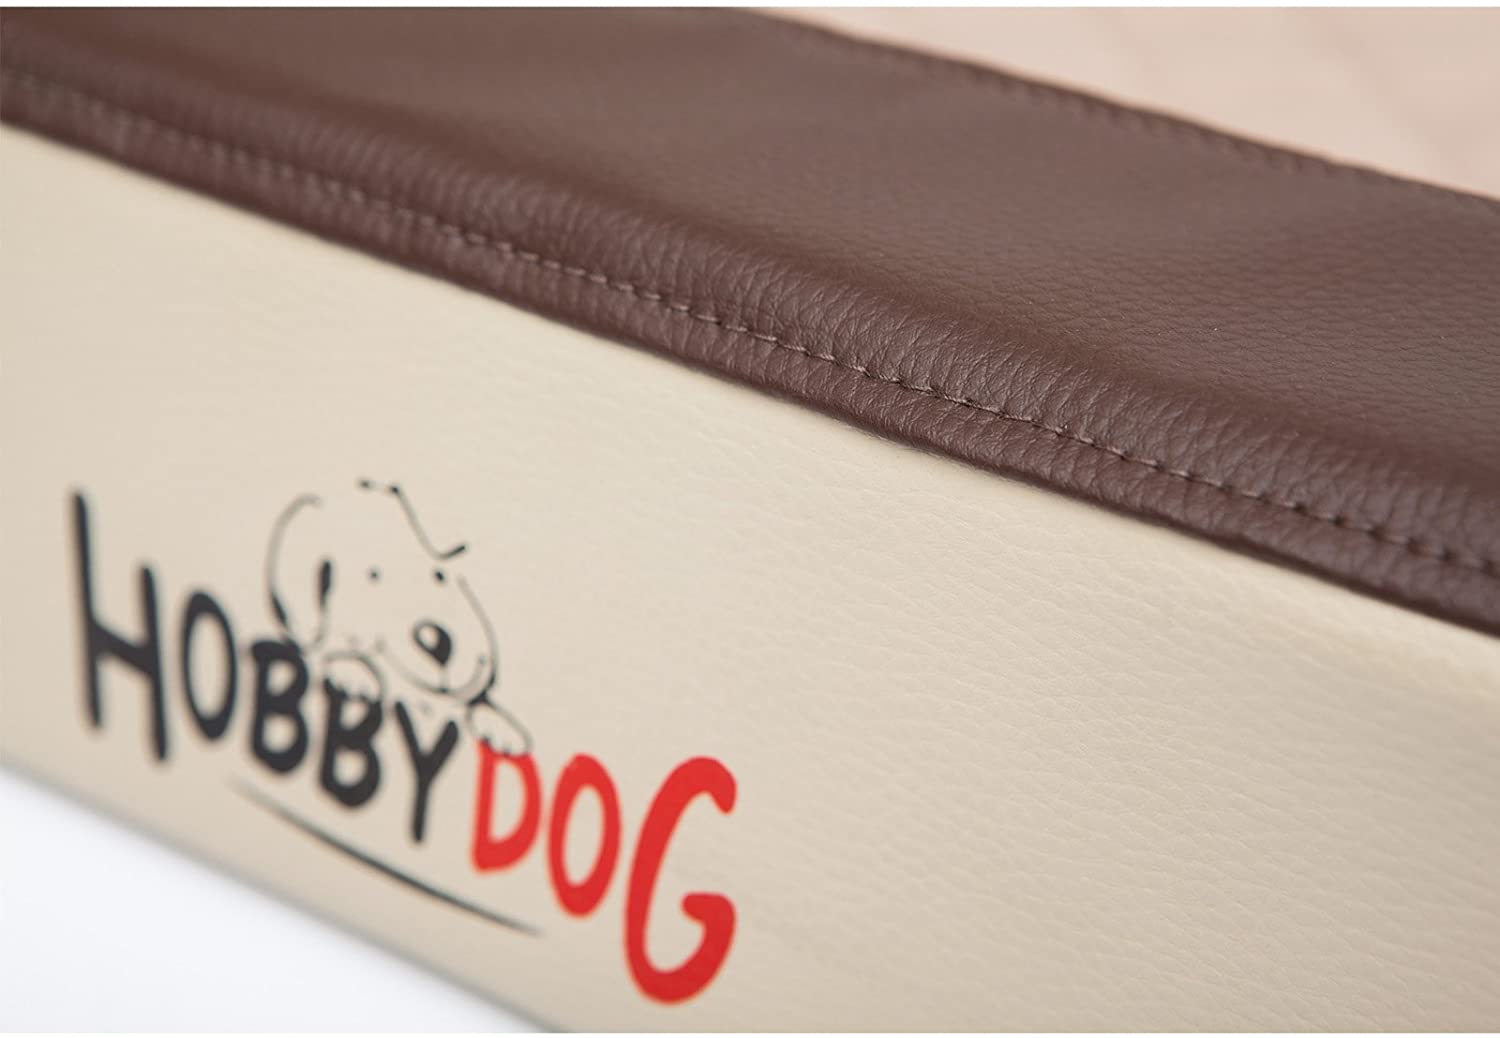  Hobbydog Cama para Perros, tamaño L, 70 x 50 cm, aushaltbares codurastoff, Lavable a 30 °C, Resistencia contra arañazos, de la UE del 